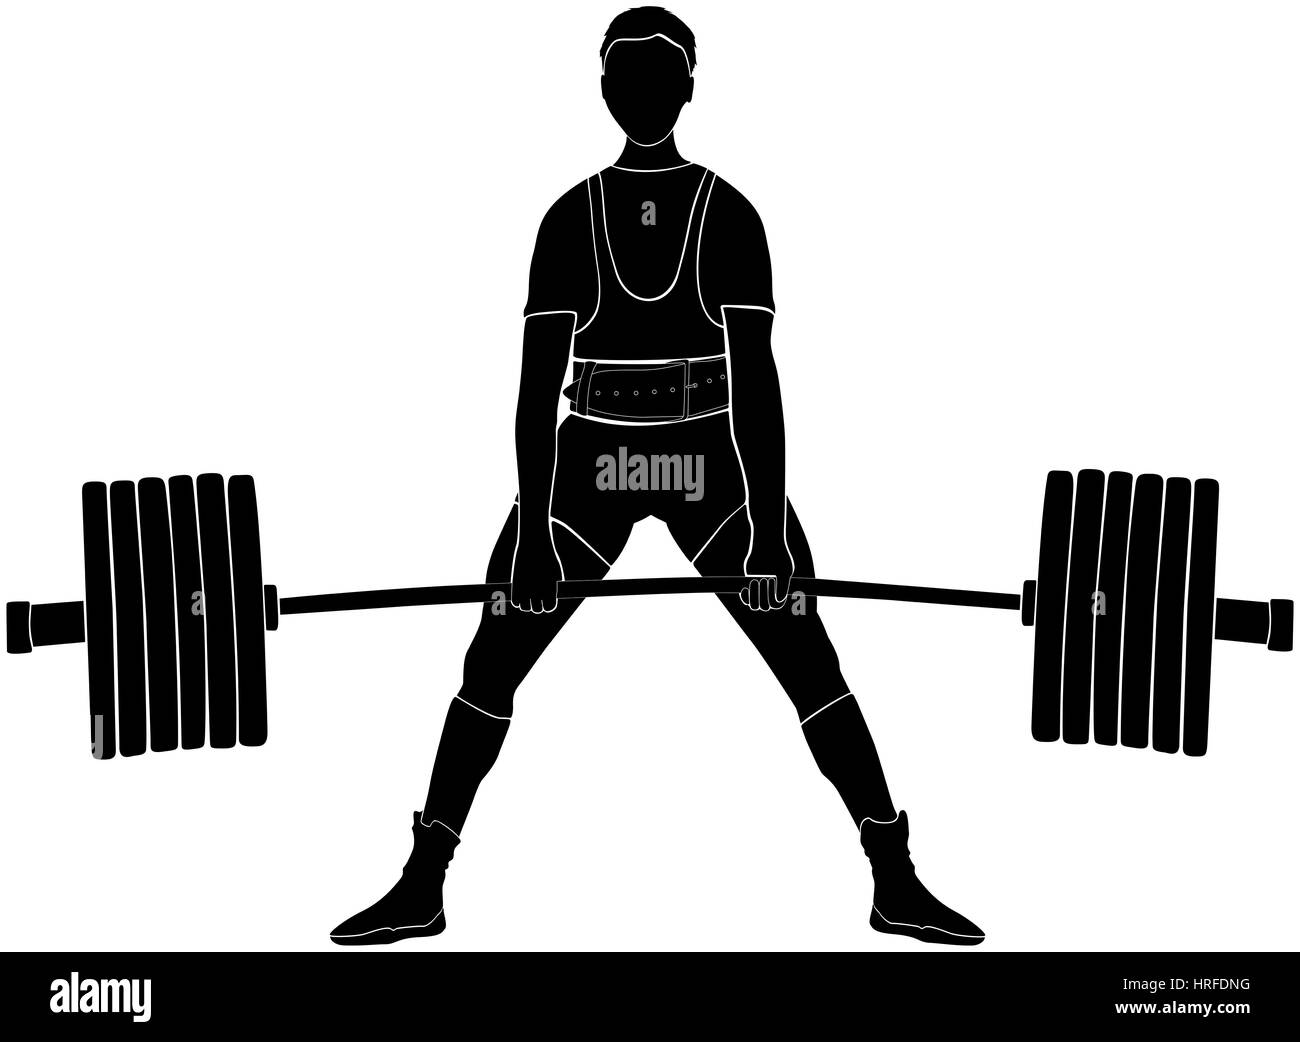 männlicher Athlet Powerlifter Kreuzheben im Kraftdreikampf schwarze silhouette Stockfoto